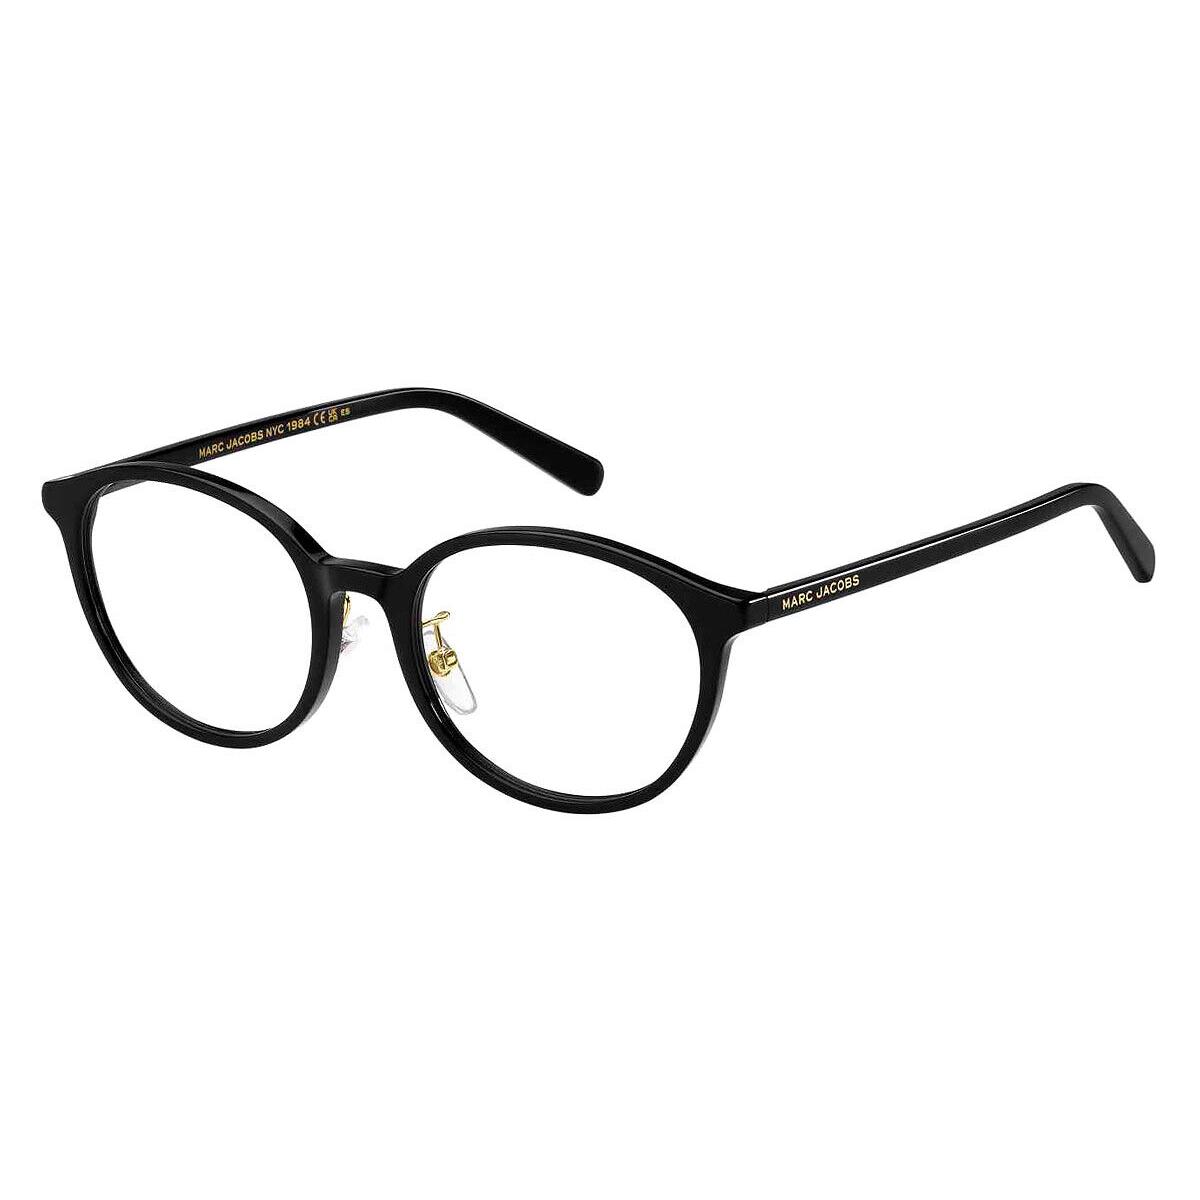 Marc Jacobs Mjb Eyeglasses Women Black 51mm - Frame: Black, Lens: Demo